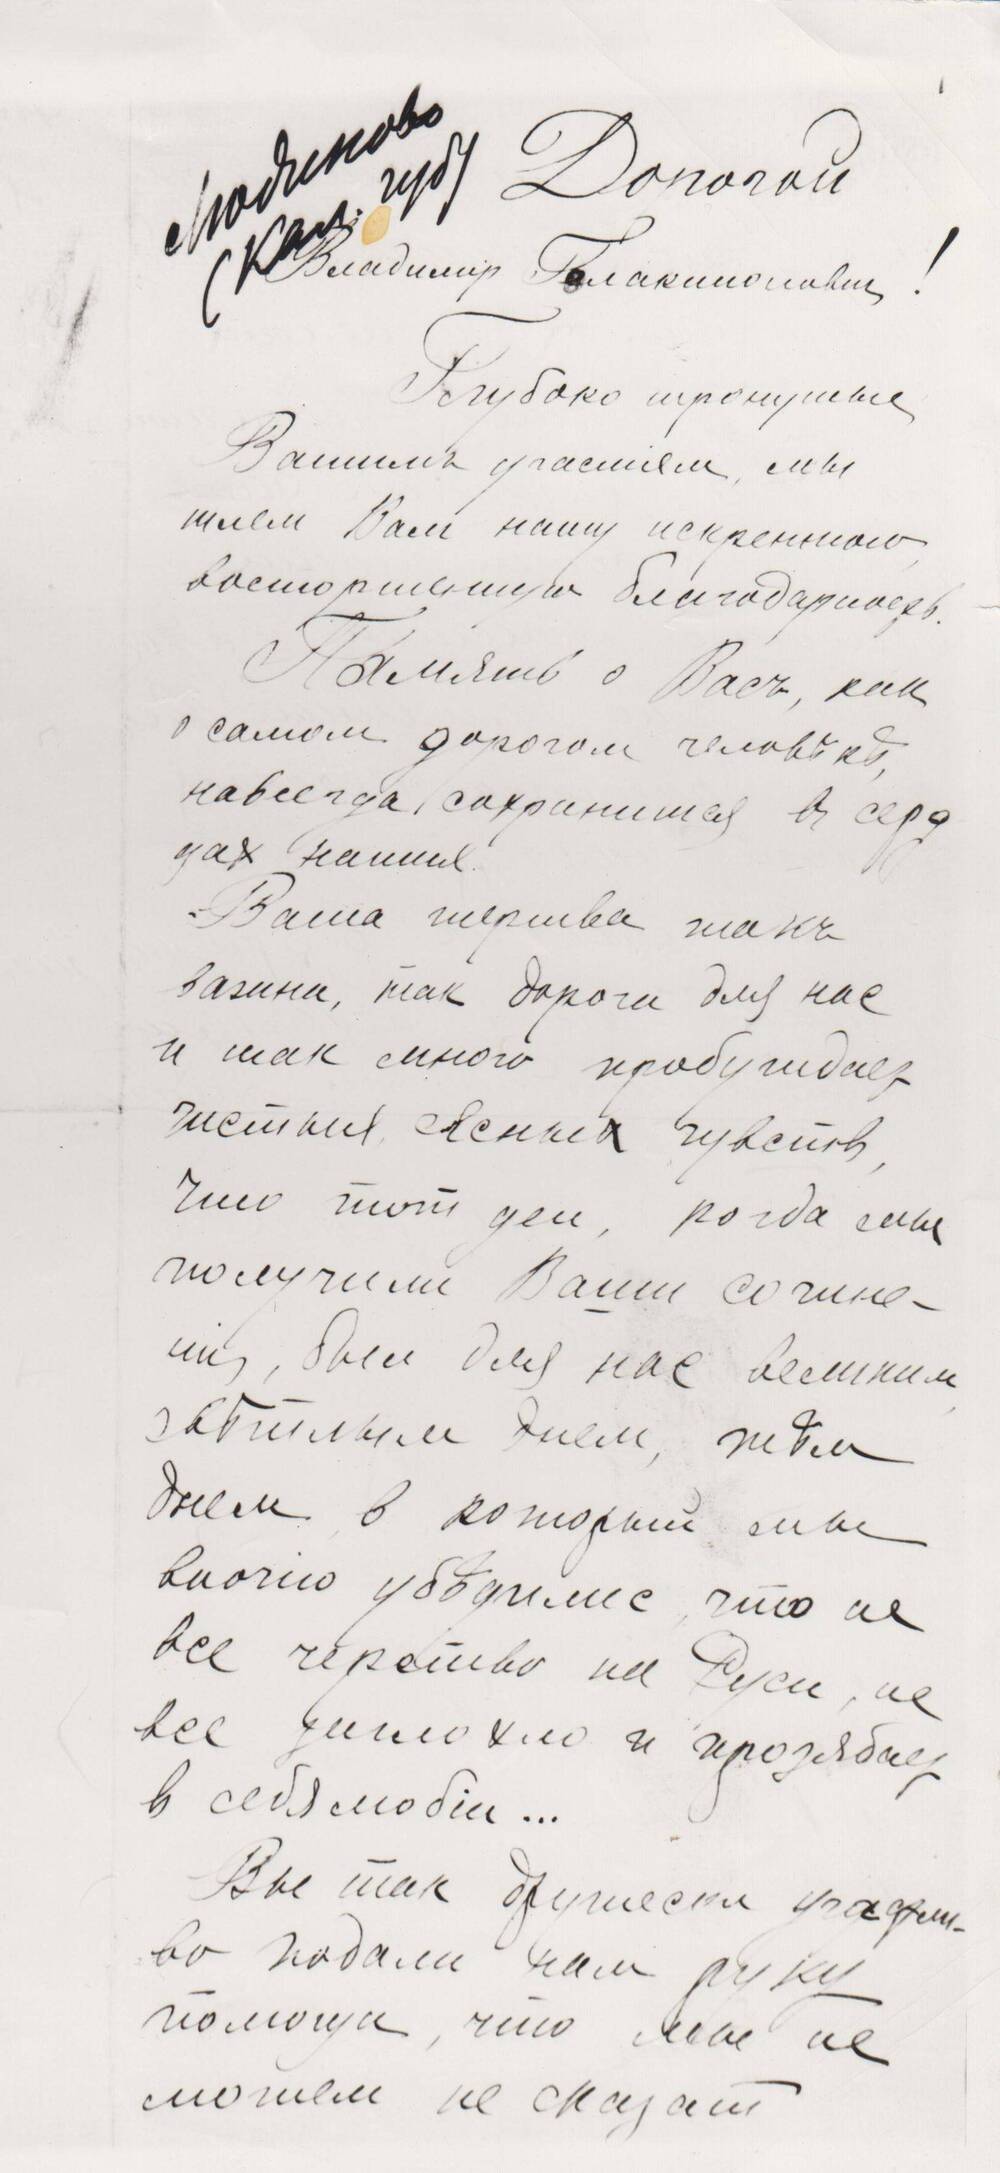 Письмо членов Людиновского кружка самообразования писателю В.Г. Короленко с благодарностью за присланную литературу